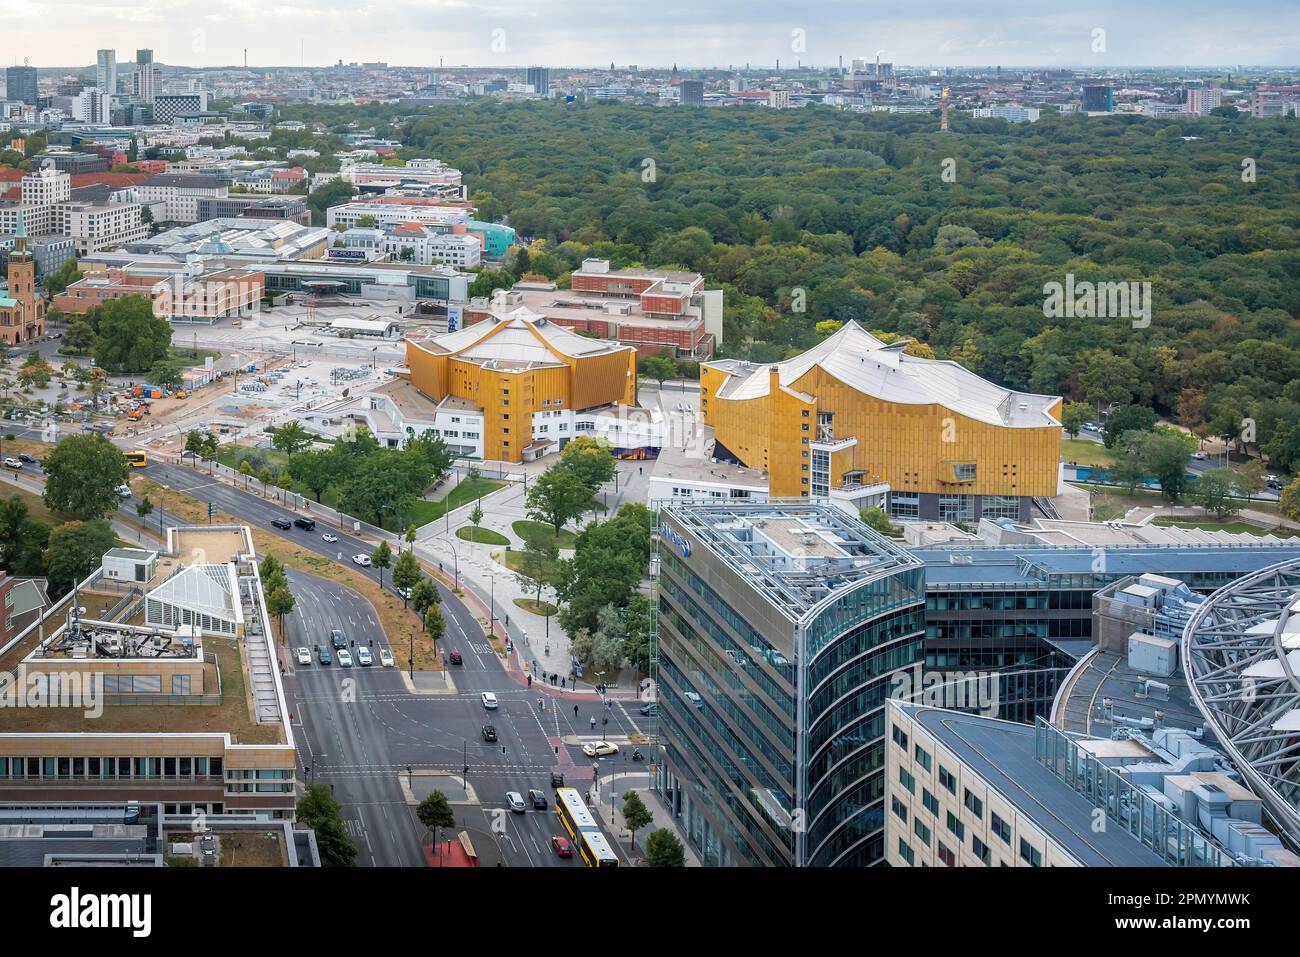 Veduta aerea di Berlino con Berliner Philharmonie (sala concerti sede della Filarmonica di Berlino) - Berlino, Germania Foto Stock